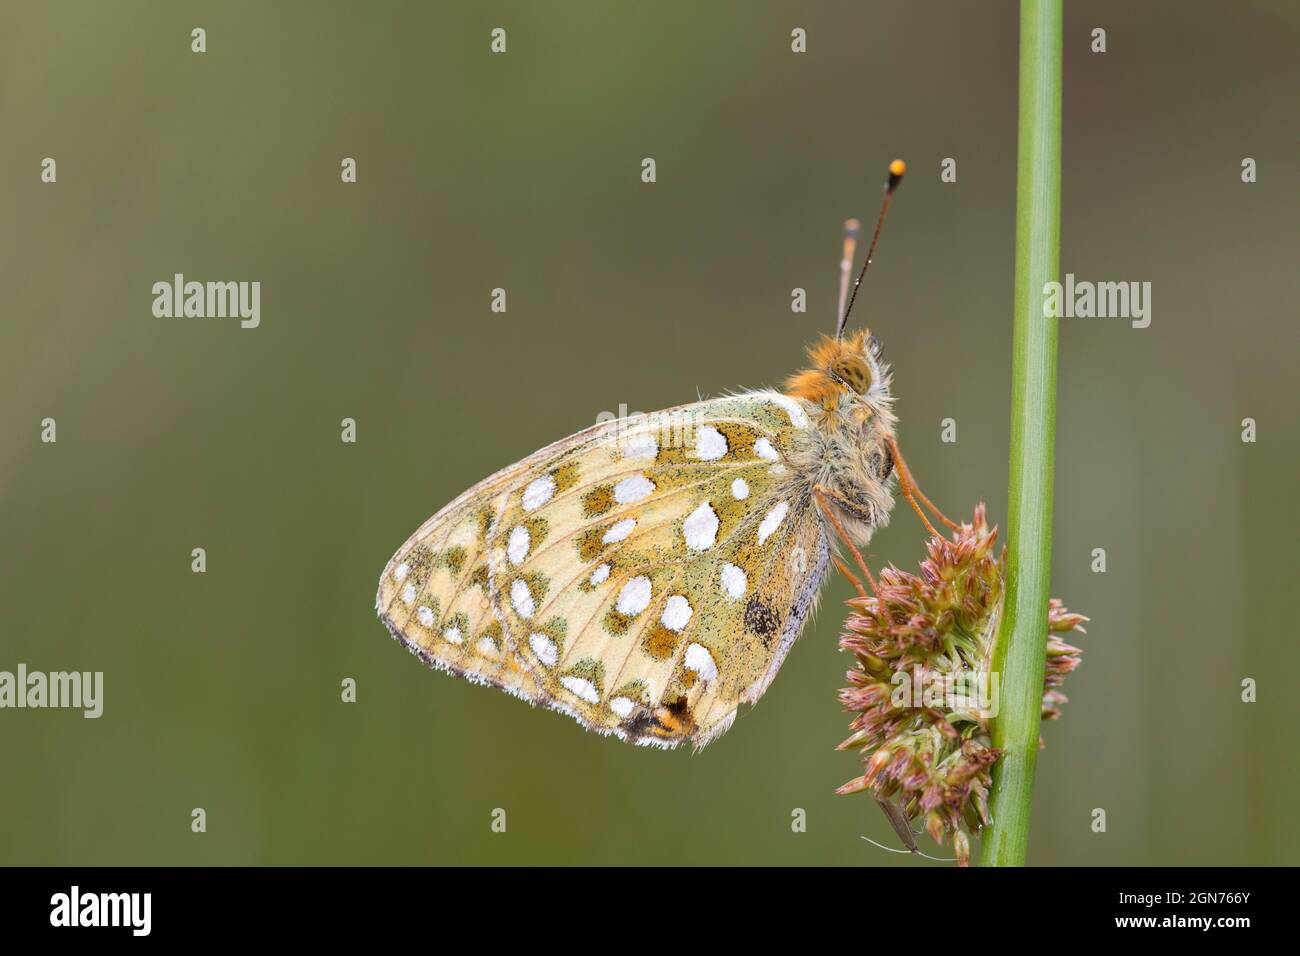 Vert foncé Fritlaary (Speyeria aglaja) papillon adulte en roosting sur une tige de pointe. Powys, pays de Galles. Juin. Banque D'Images